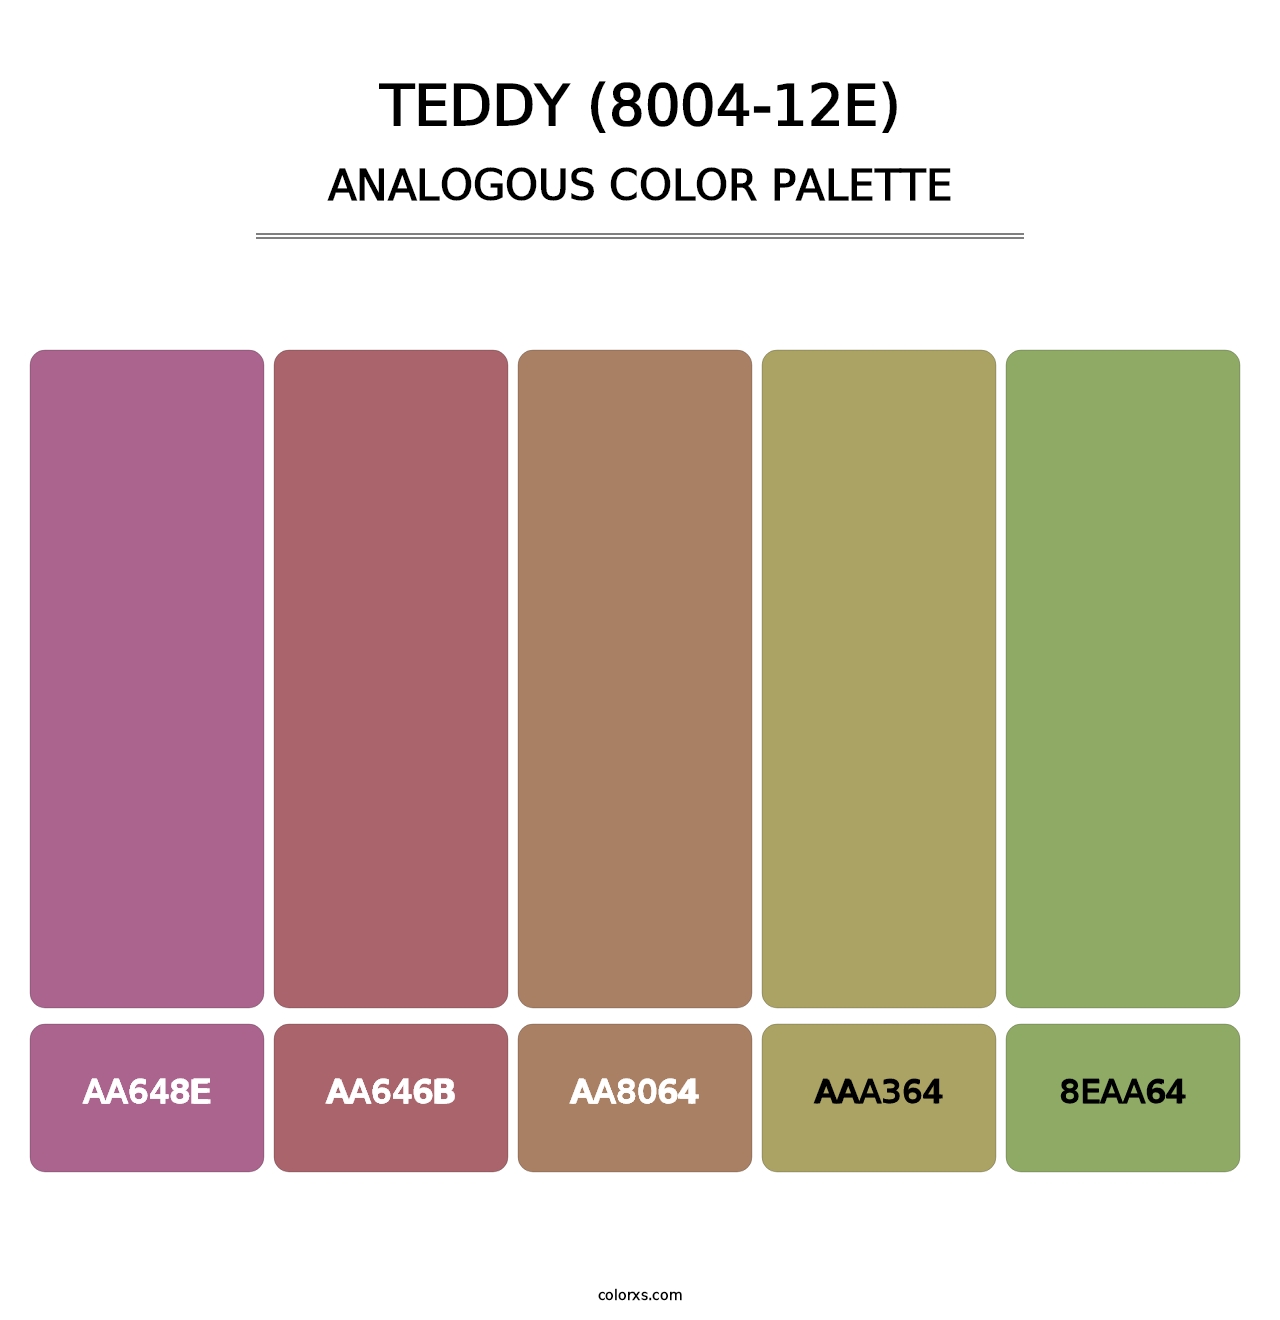 Teddy (8004-12E) - Analogous Color Palette